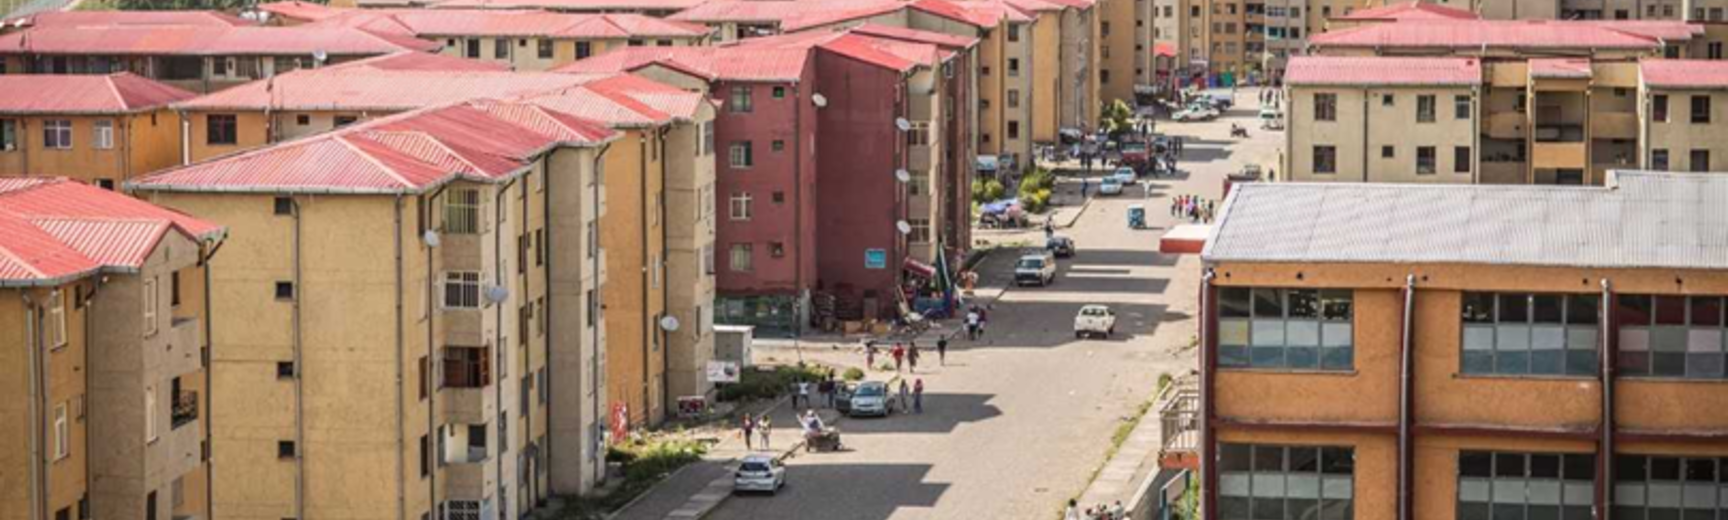 Condominium housing in Addis Ababa, Ethiopia